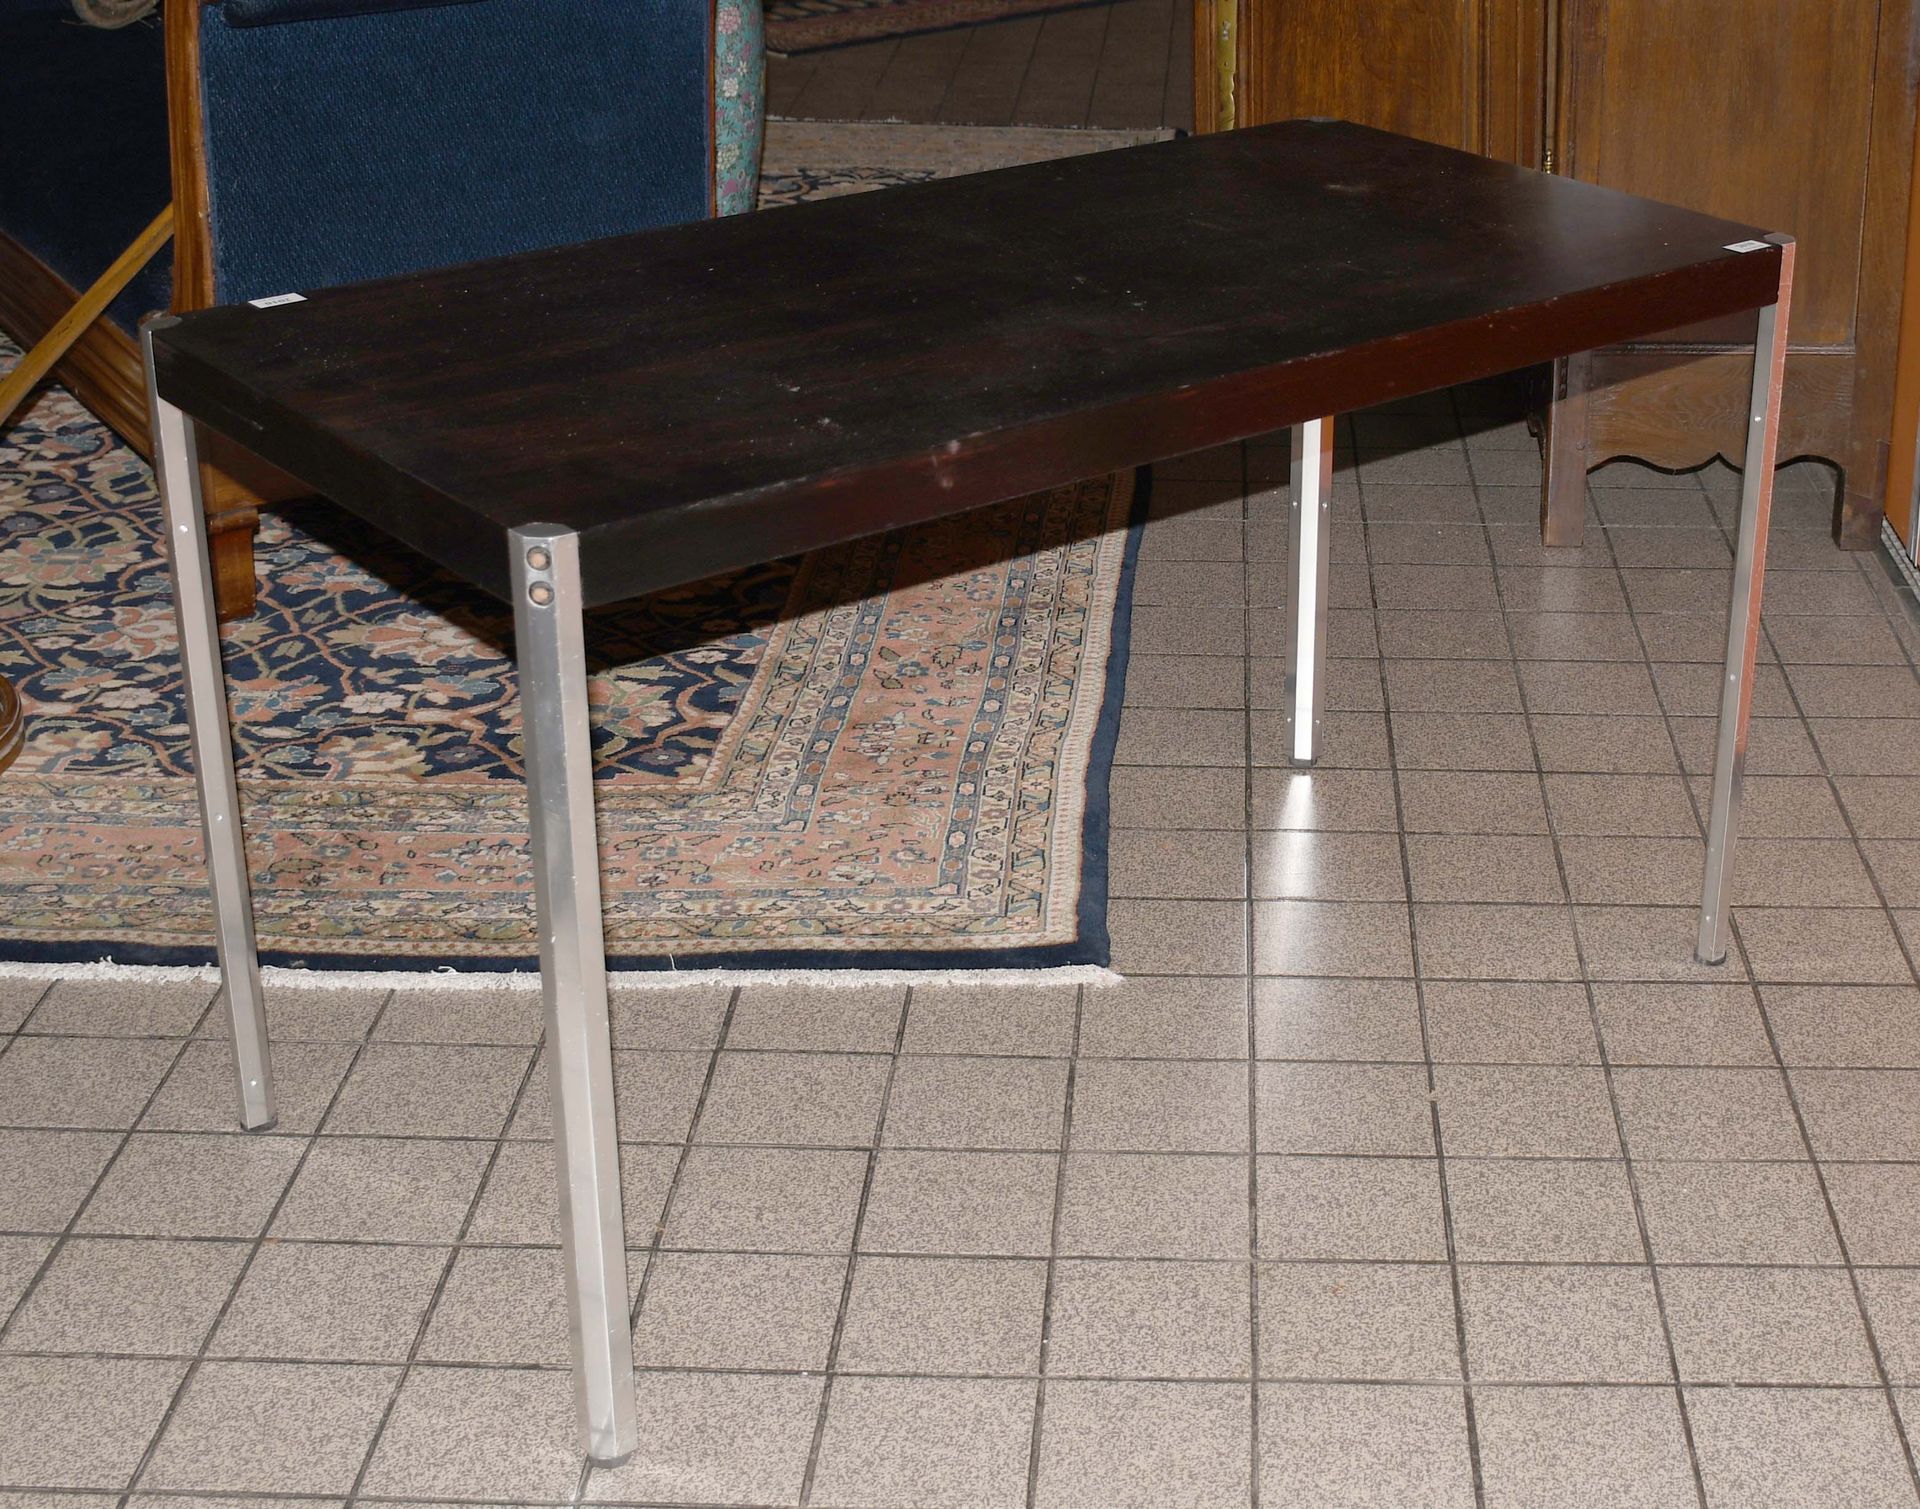 Null 德科恩

小型复古书桌。Sefac系列。

尺寸：120厘米×60厘米。